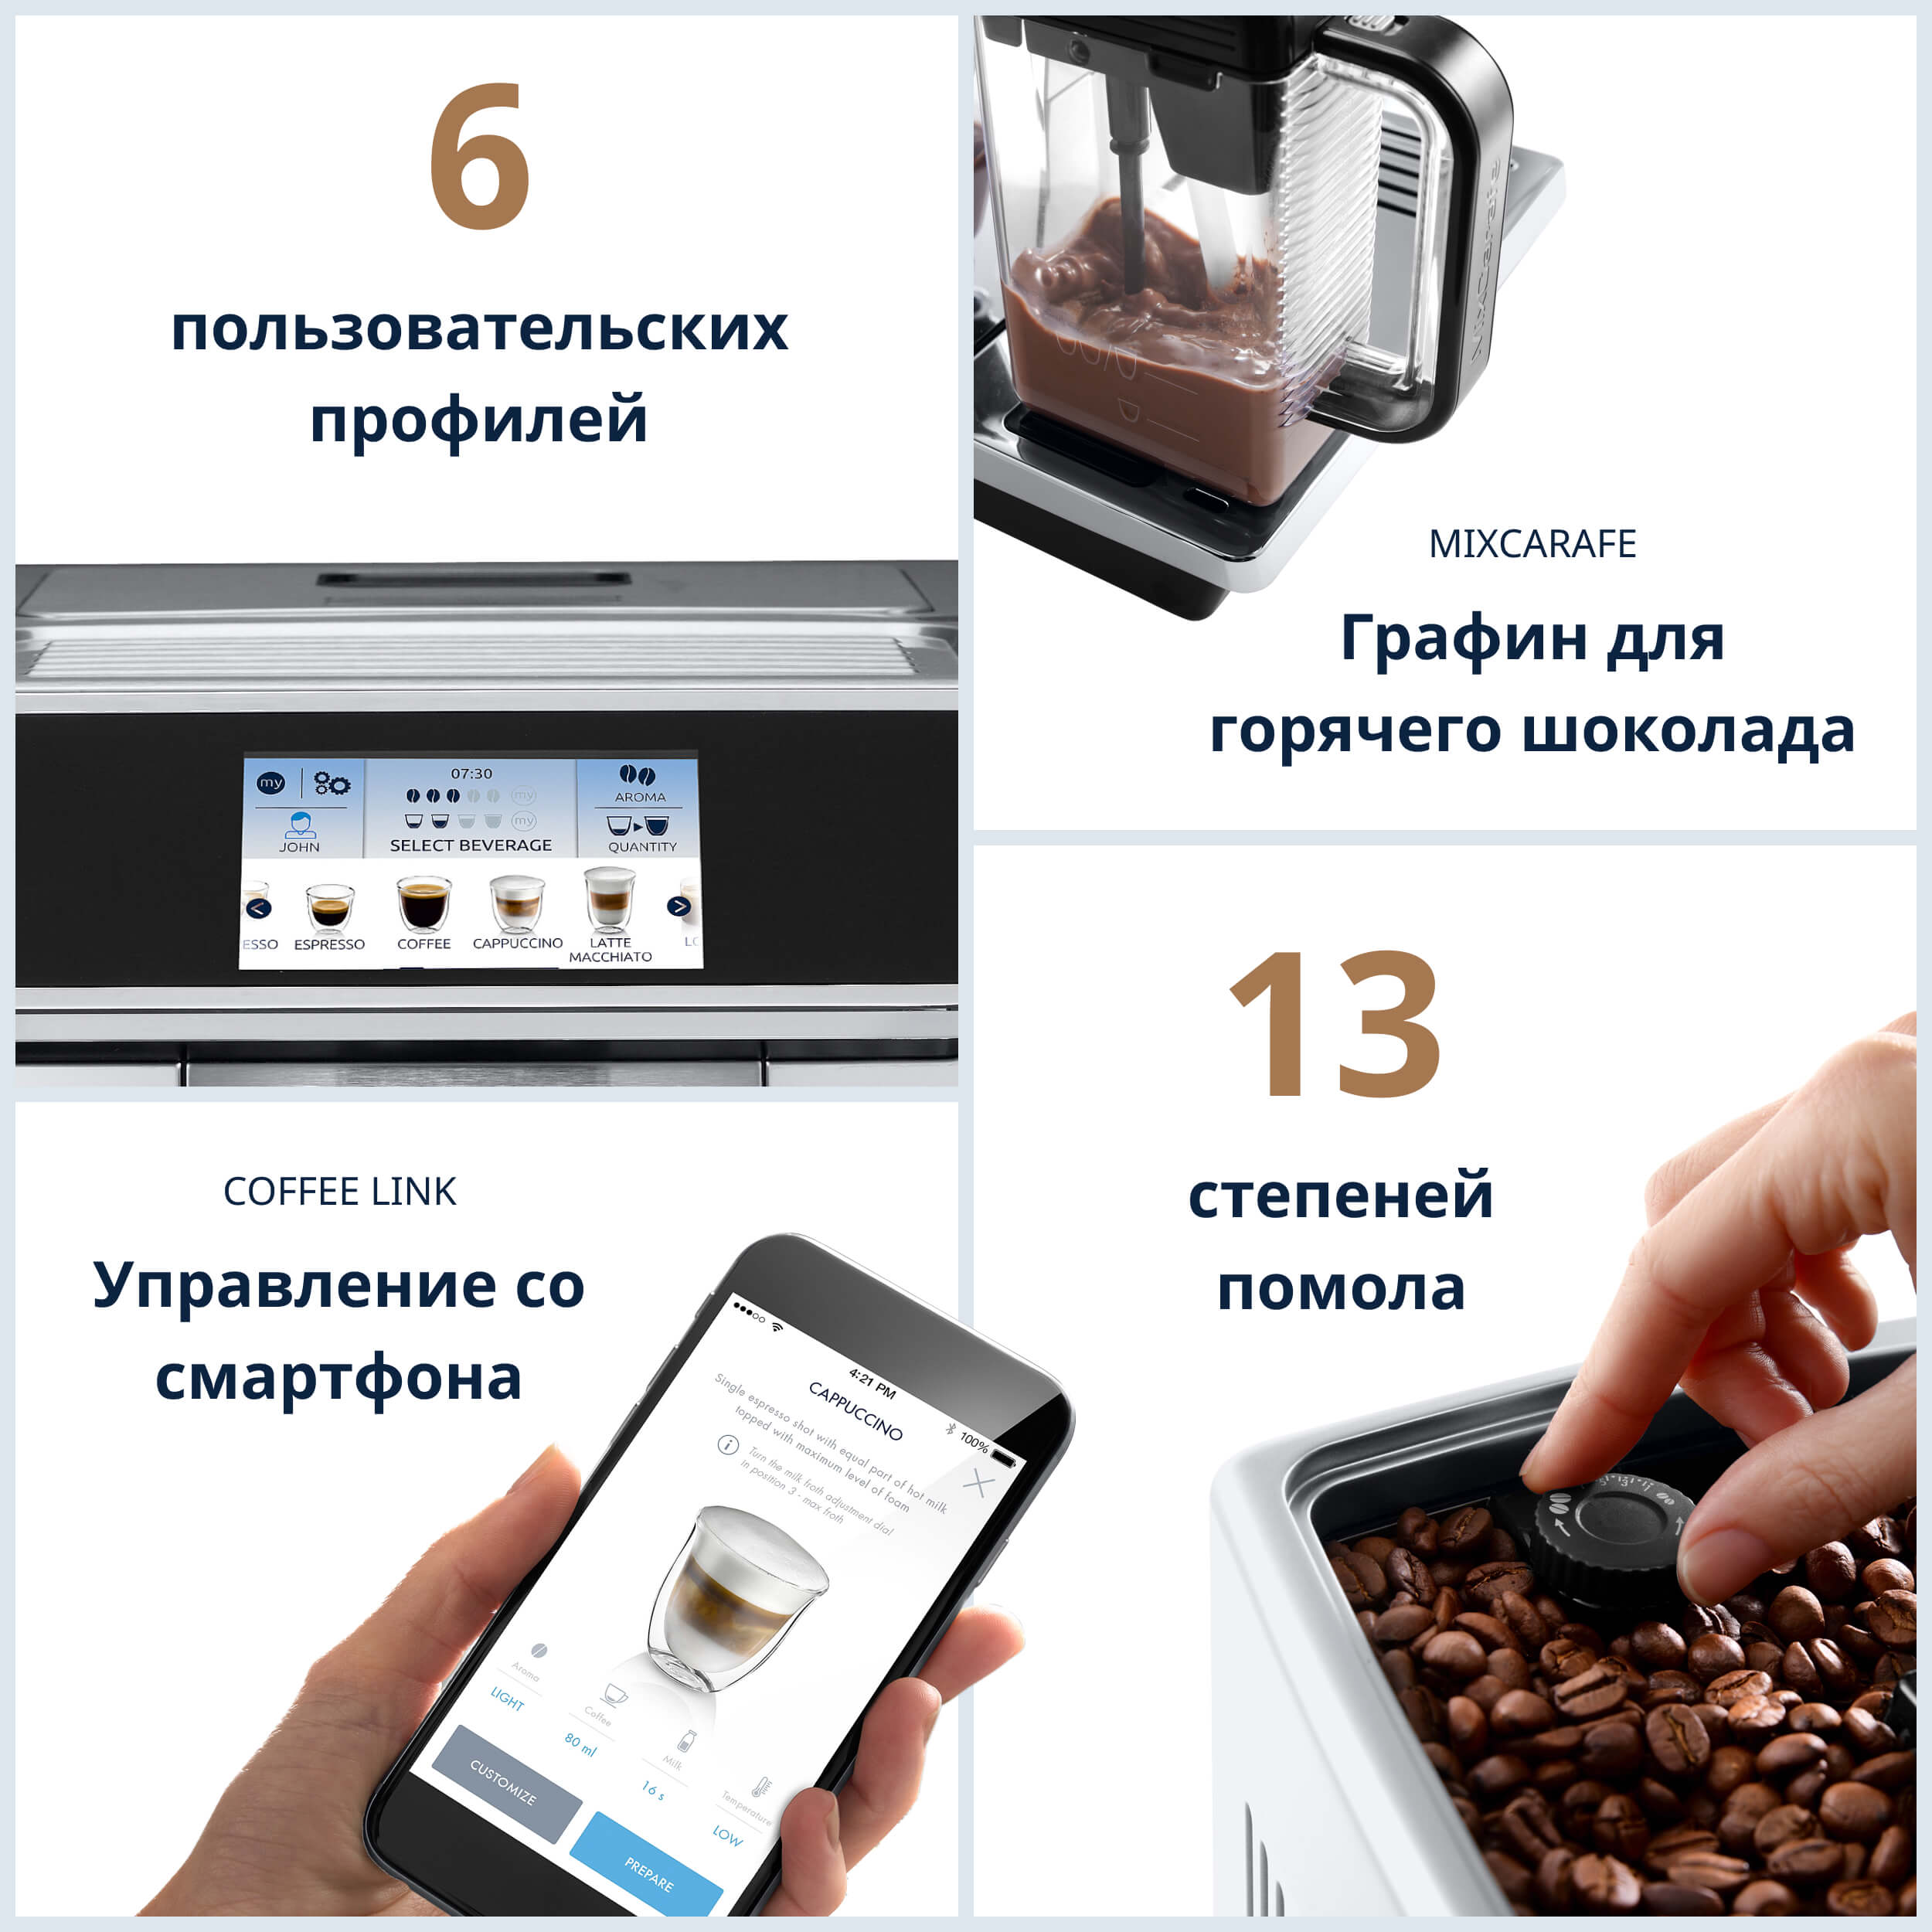 Кофемашина DeLonghi ECAM650.75 MS купить в Казахстане